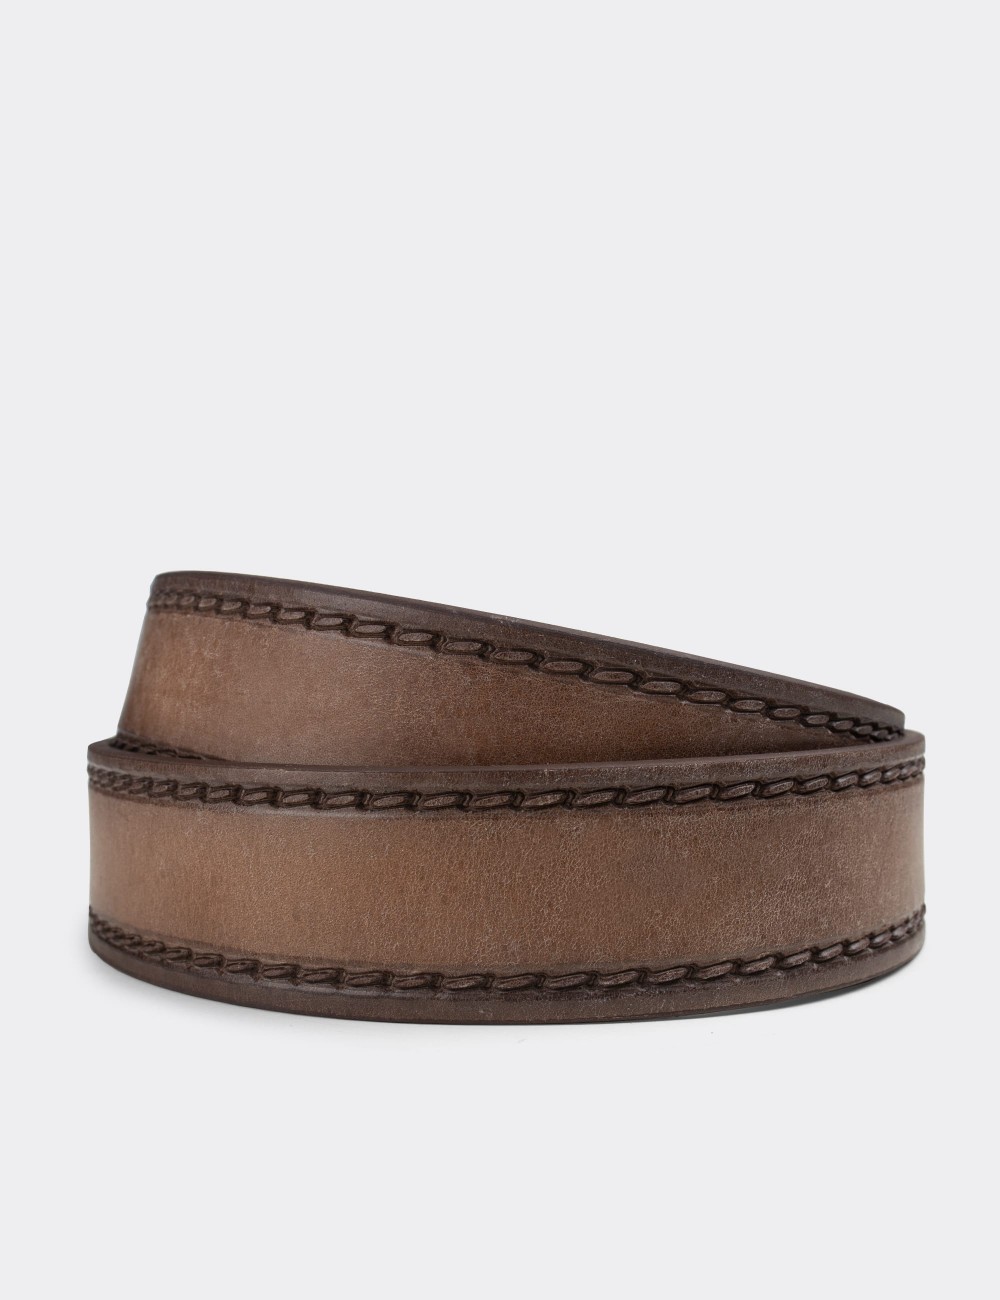  Leather Sandstone Vintage Men's Belt - K0106MVZNW01